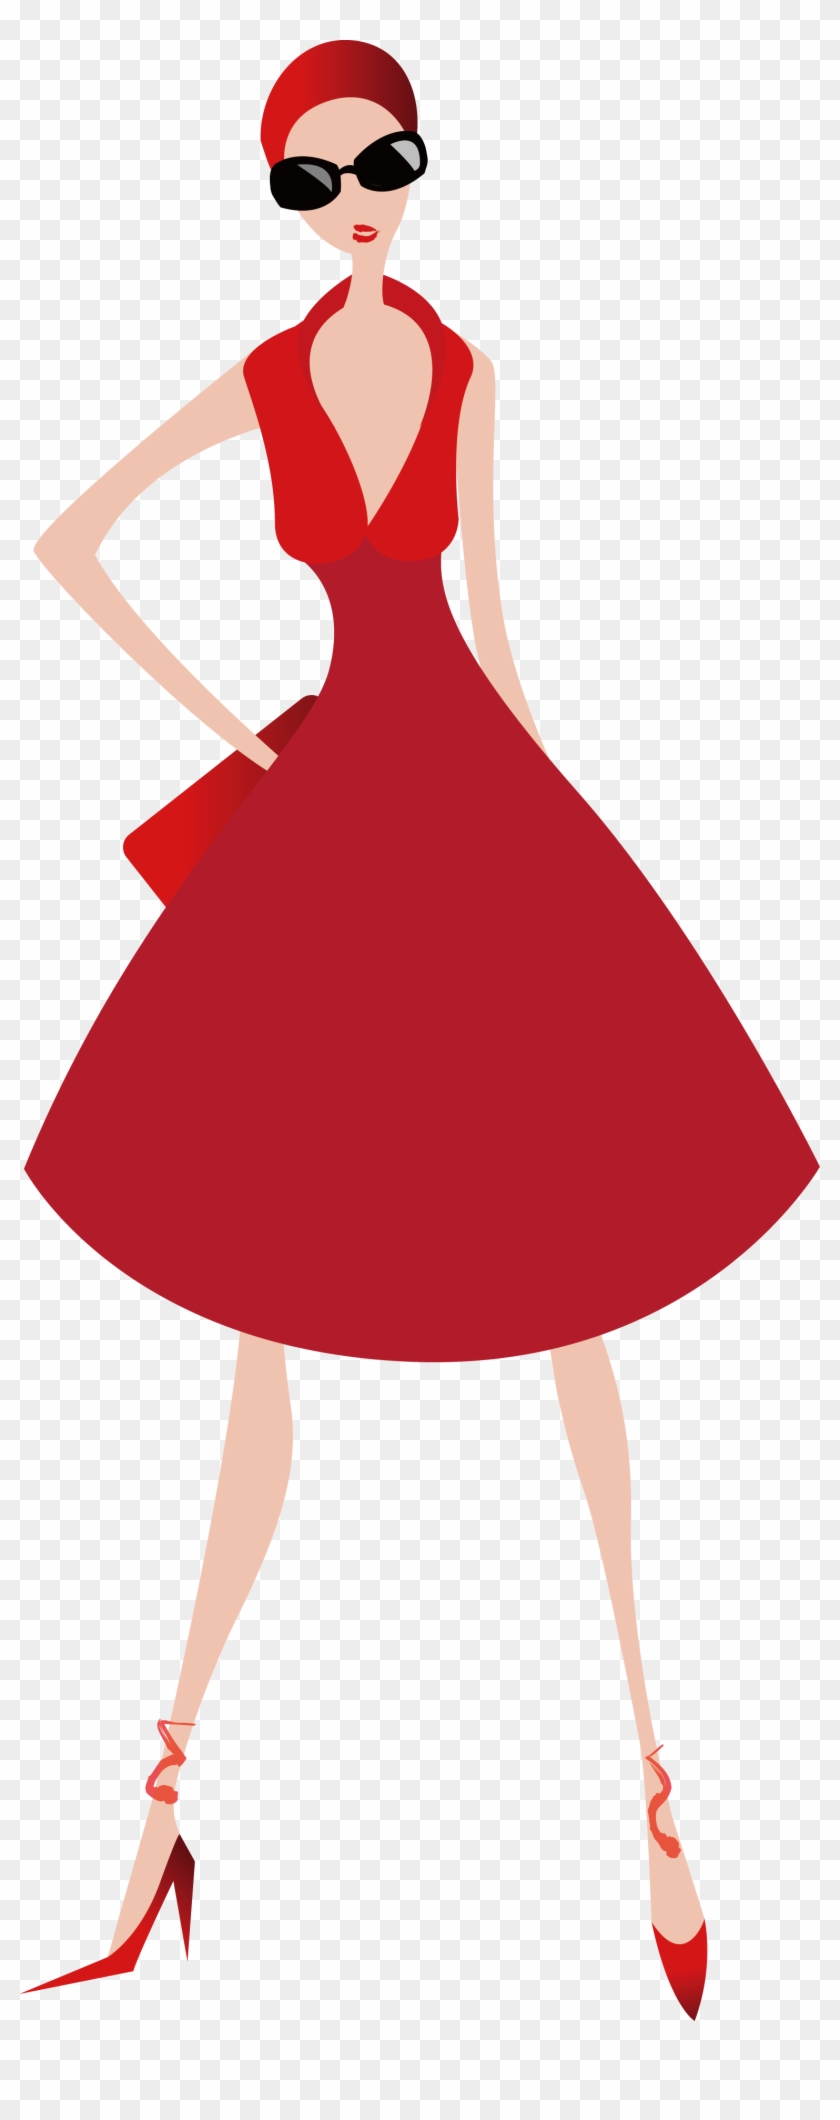 Woman Skirt Illustration - Woman Skirt Illustration #672295